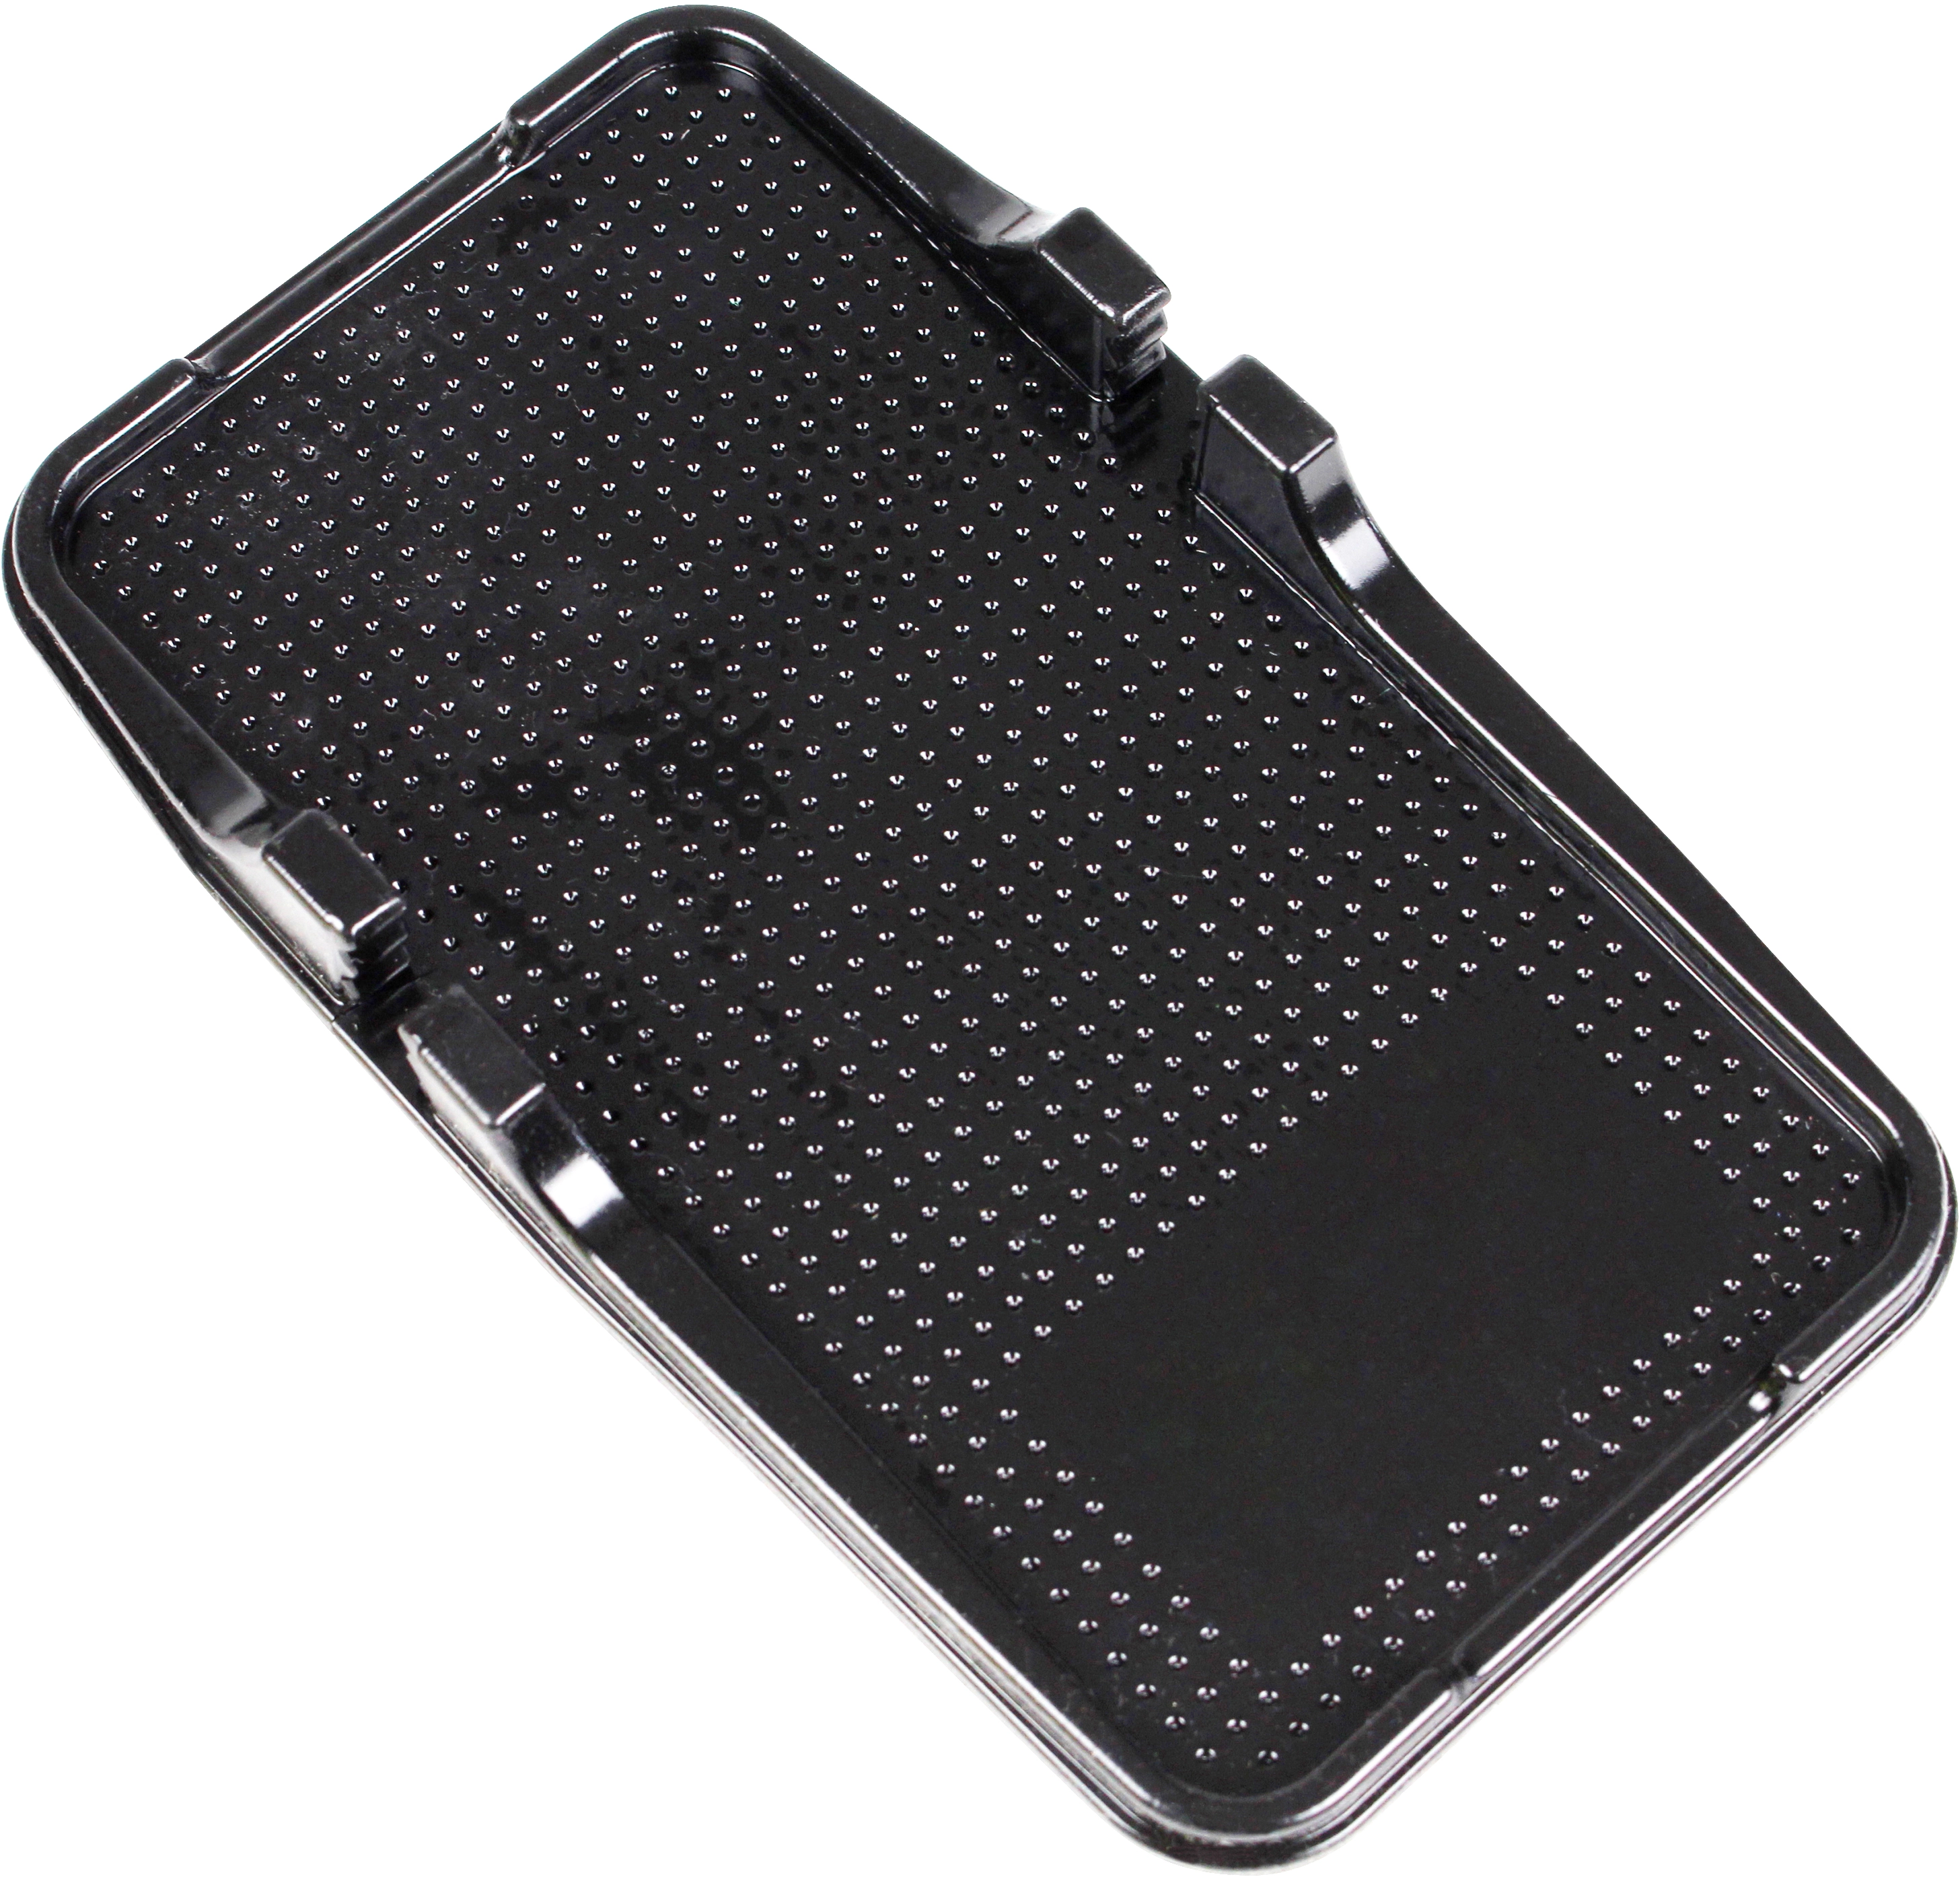 OBI AntiRutsch-Pad XL für Smartphone kaufen bei OBI